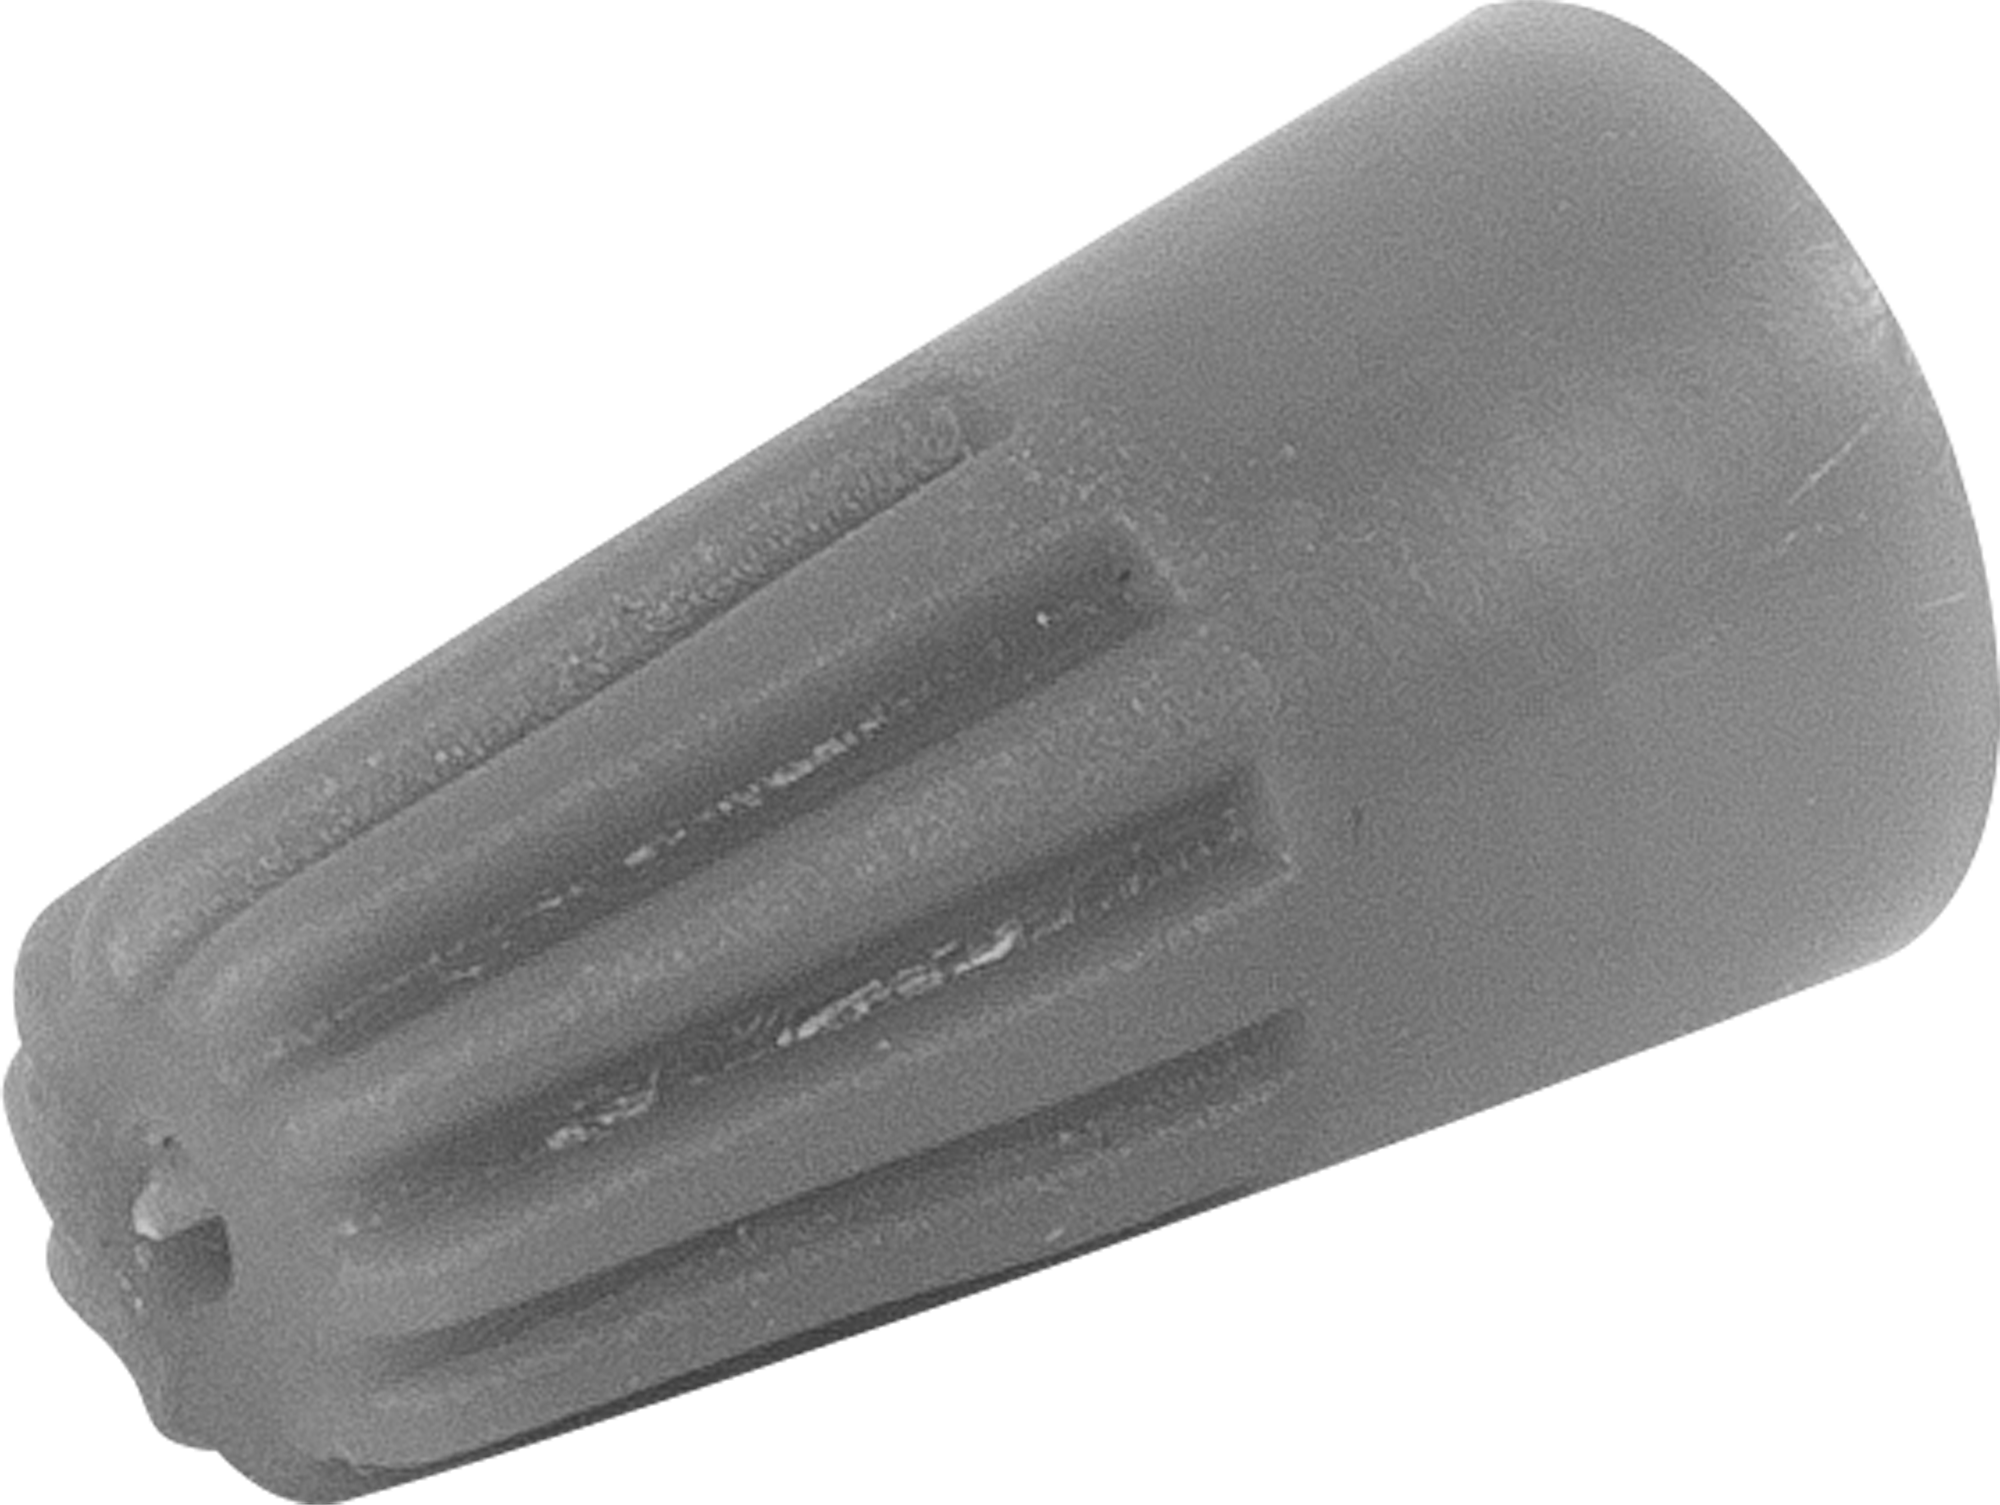  изолирующий зажим Duwi СИЗ-1 1-3 мм цвет серый 10 шт. по .